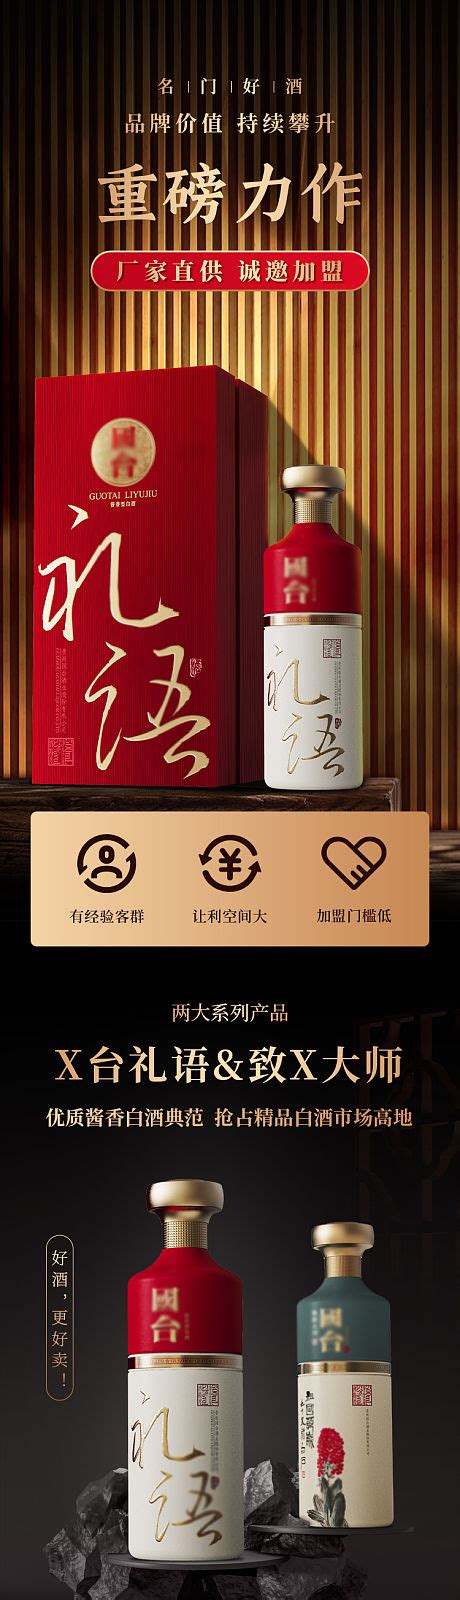 高档白酒广告宣传的“特别”之处_藏酒认知_酒类百科_中国酒志网